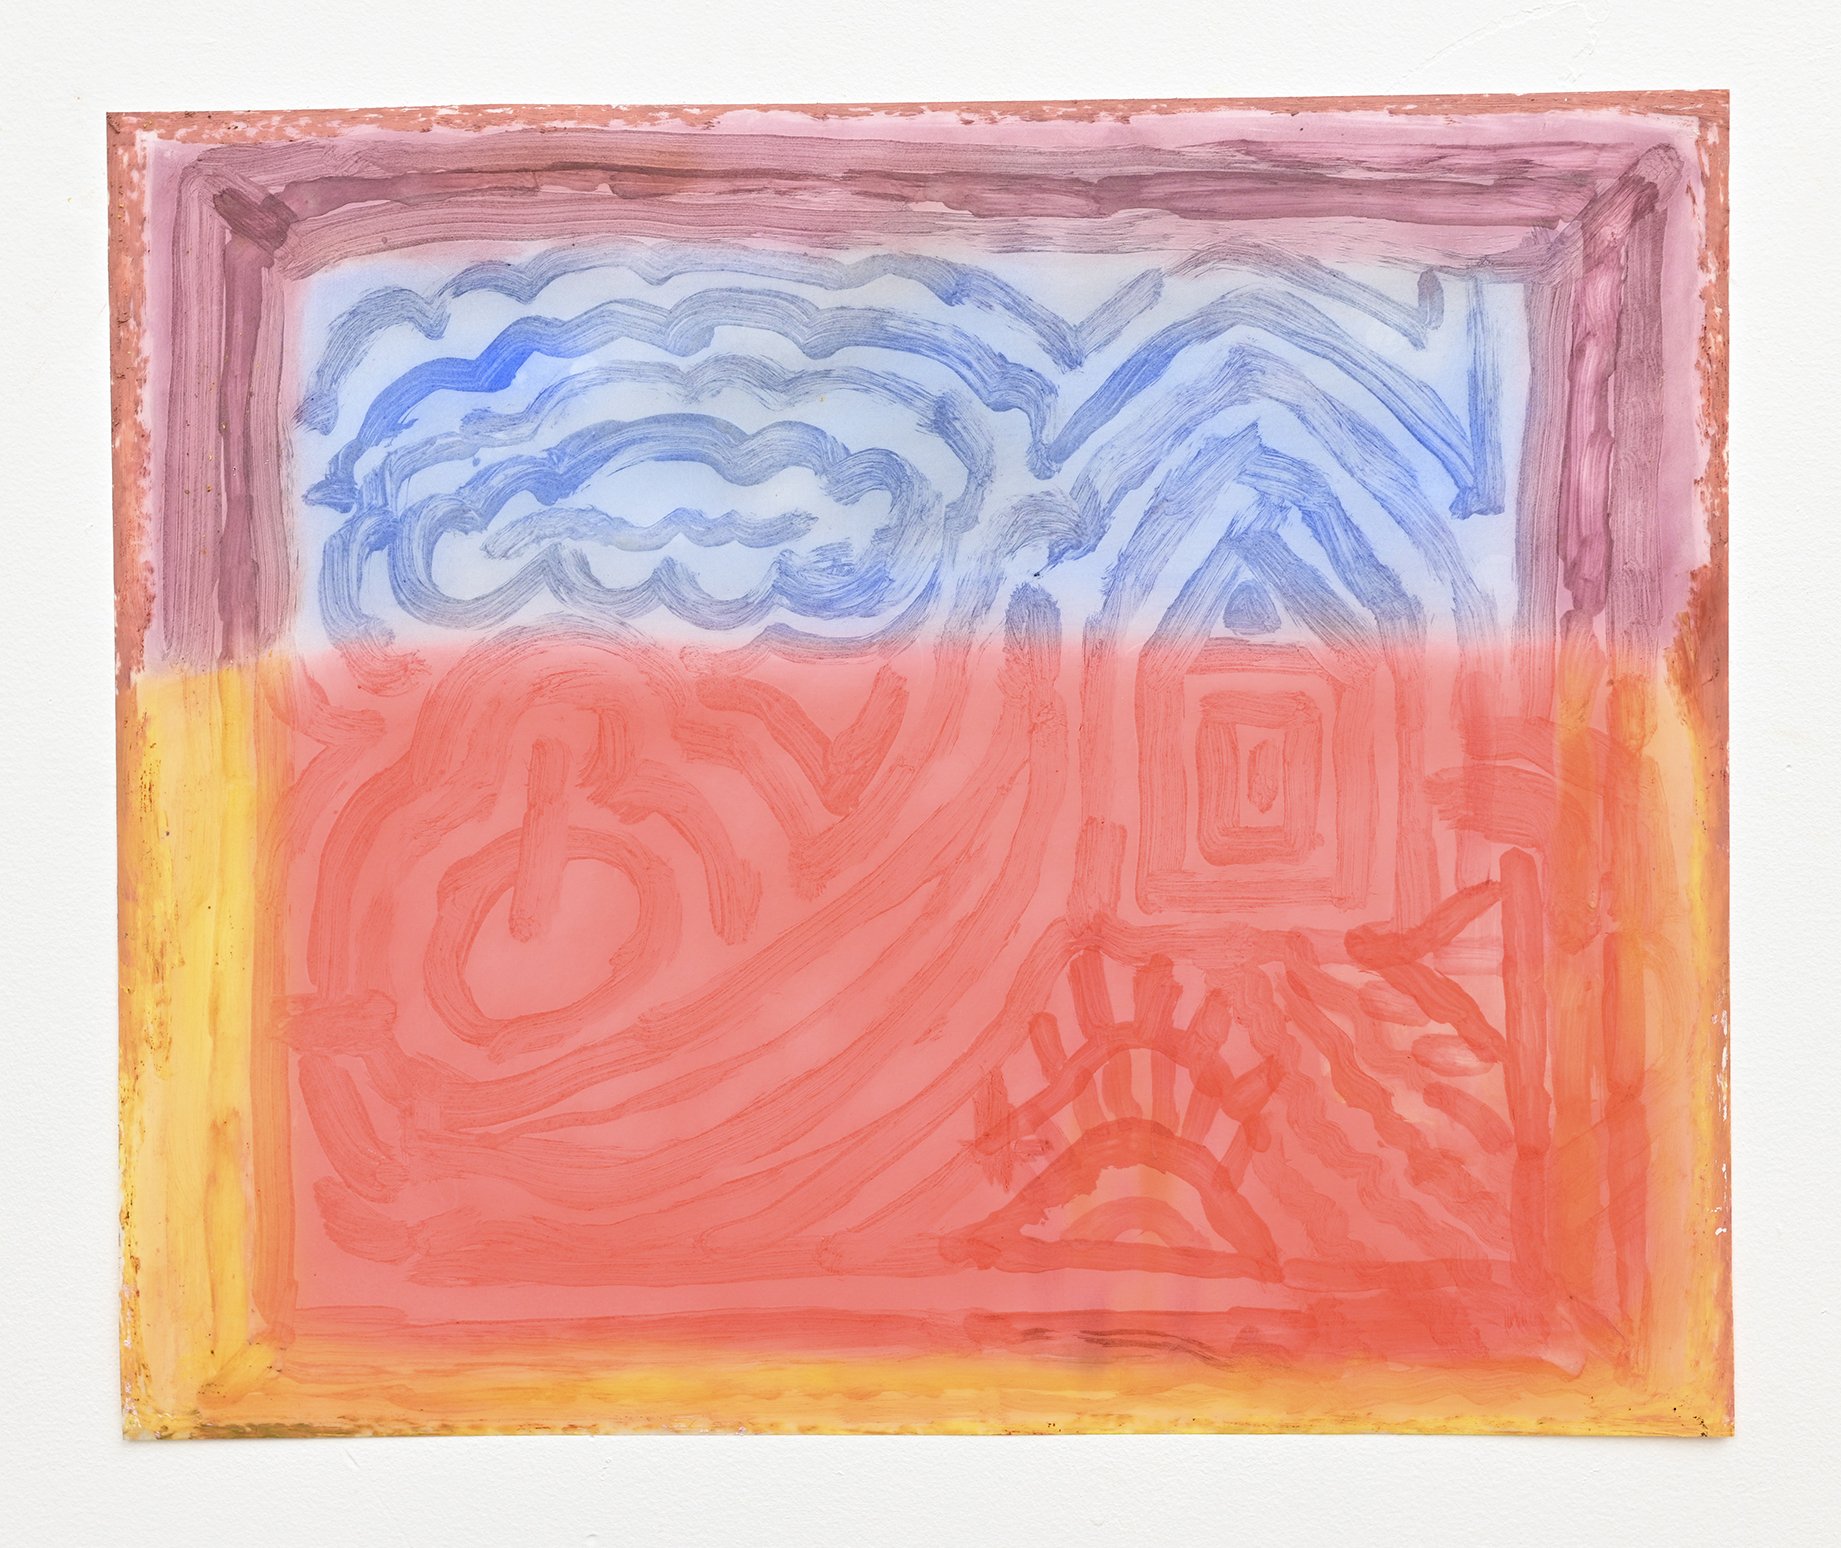   vision 4 , pastel, oil stick and medium on vellum, 17” x 14”, 2023  